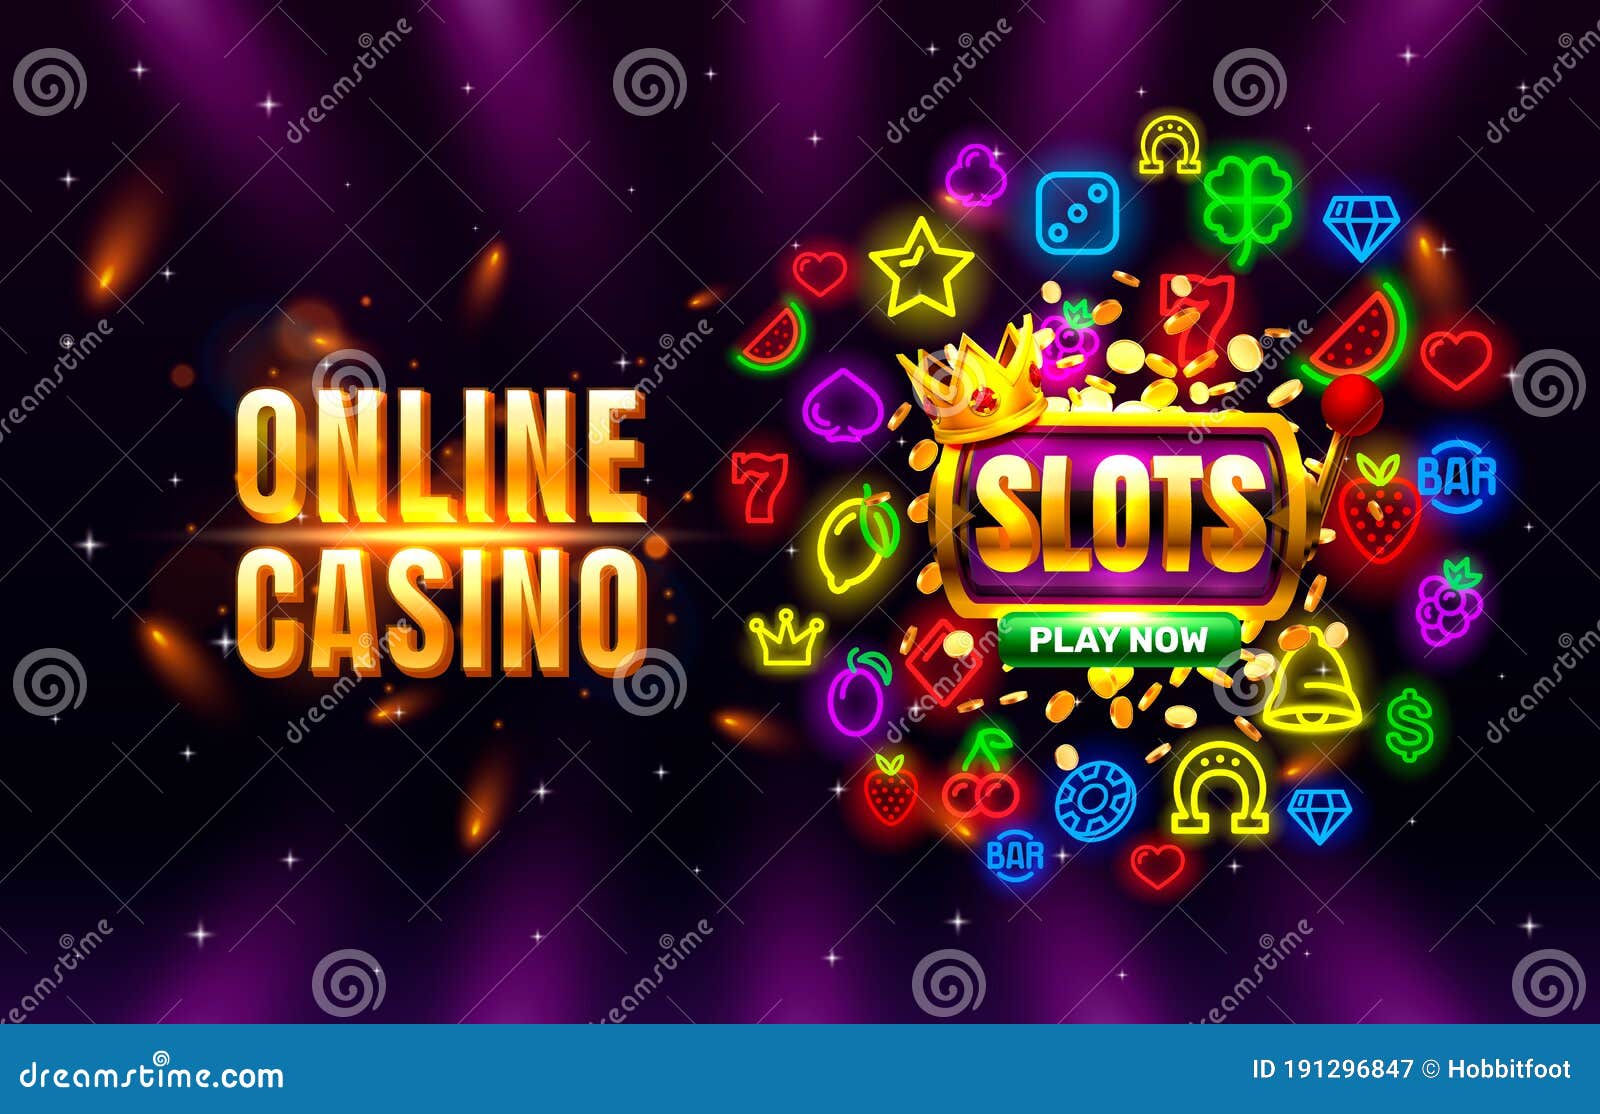 Online Casinos ! 10 trucuri pe care le știe competiția, dar nu știi